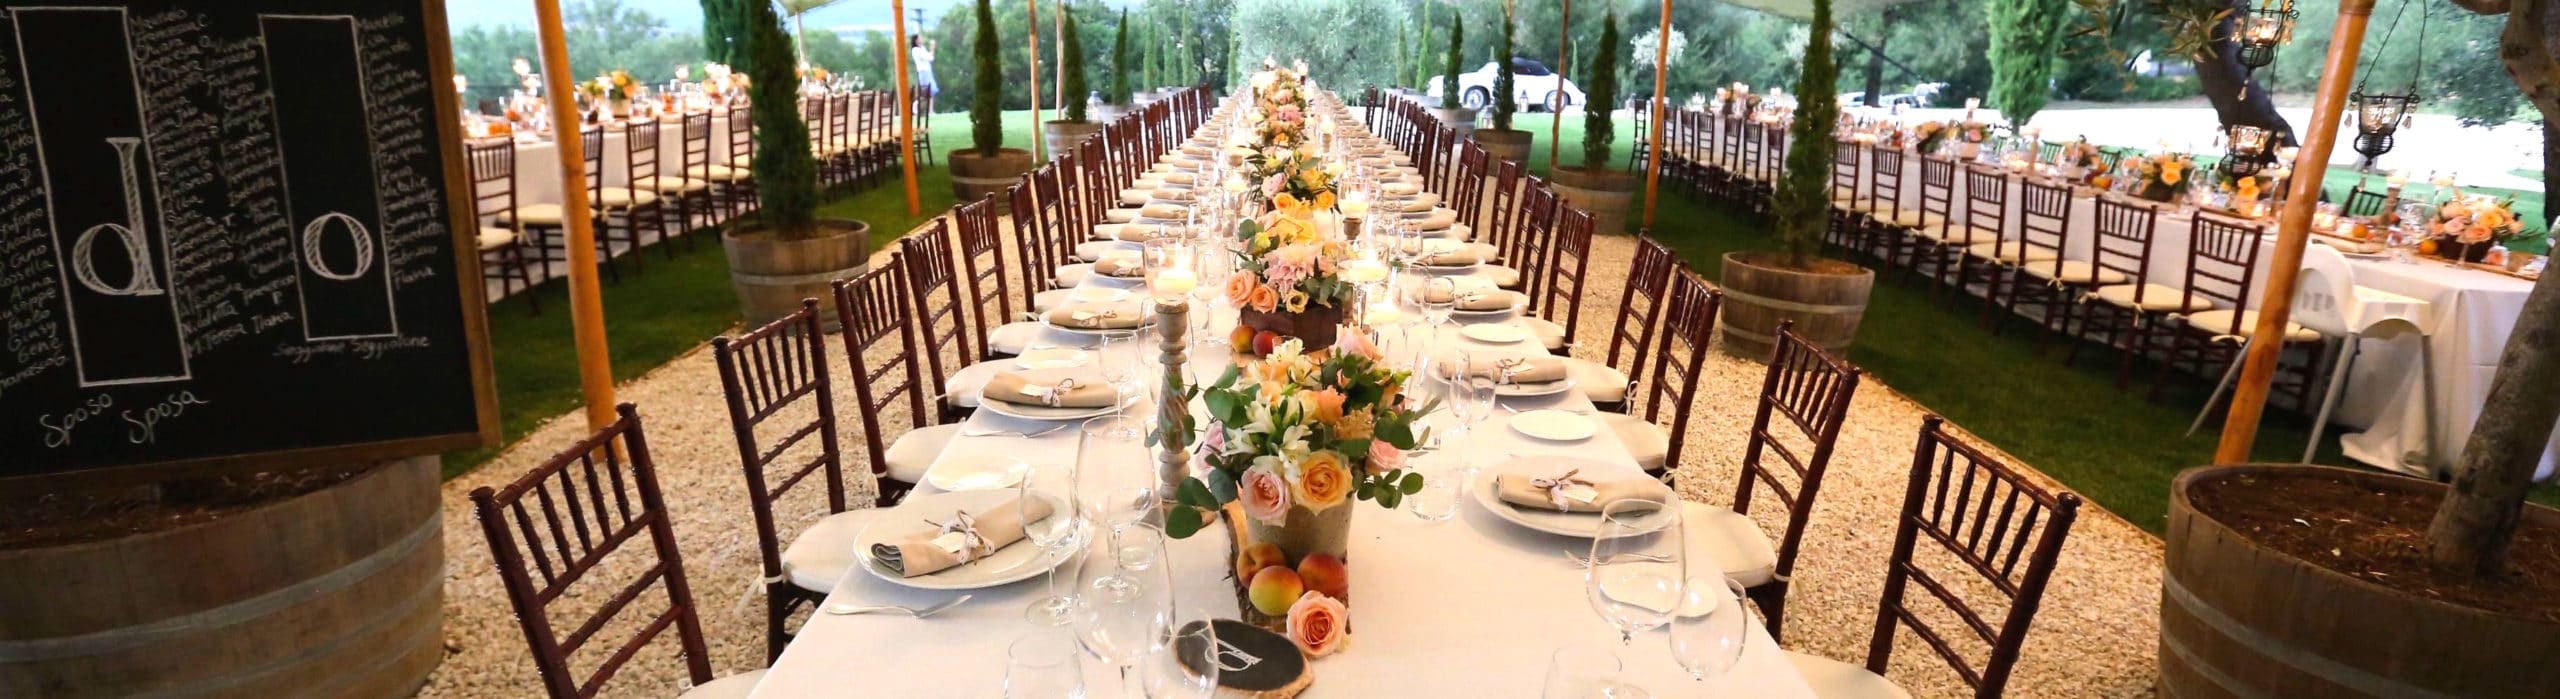 Tuscan Wedding Long Table